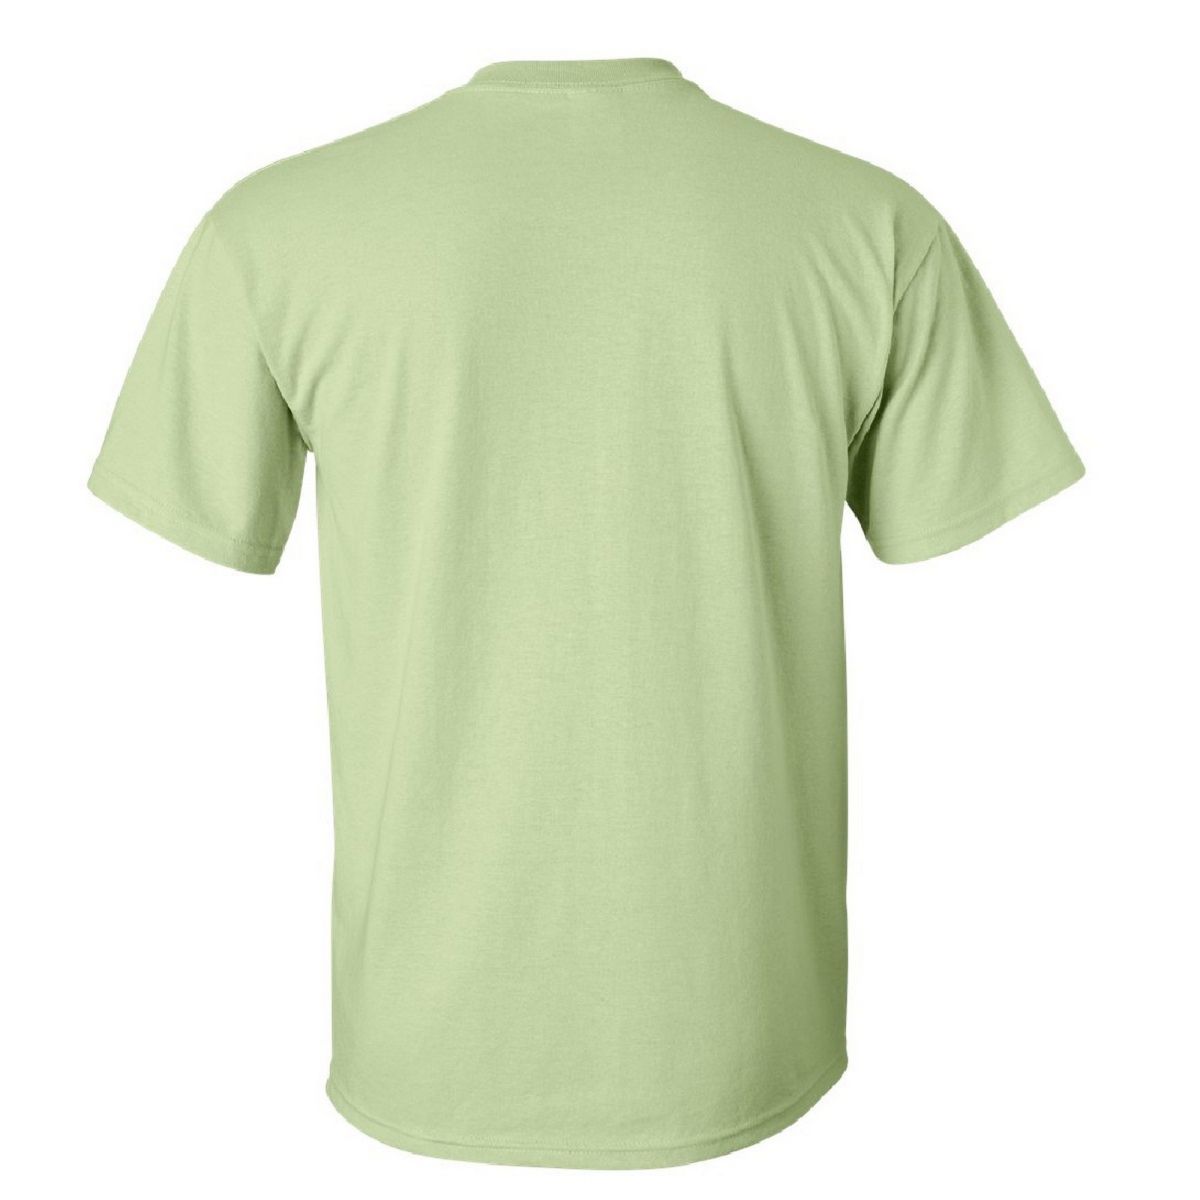 Мужская футболка из ультрахлопка с коротким рукавом Floso цена и фото